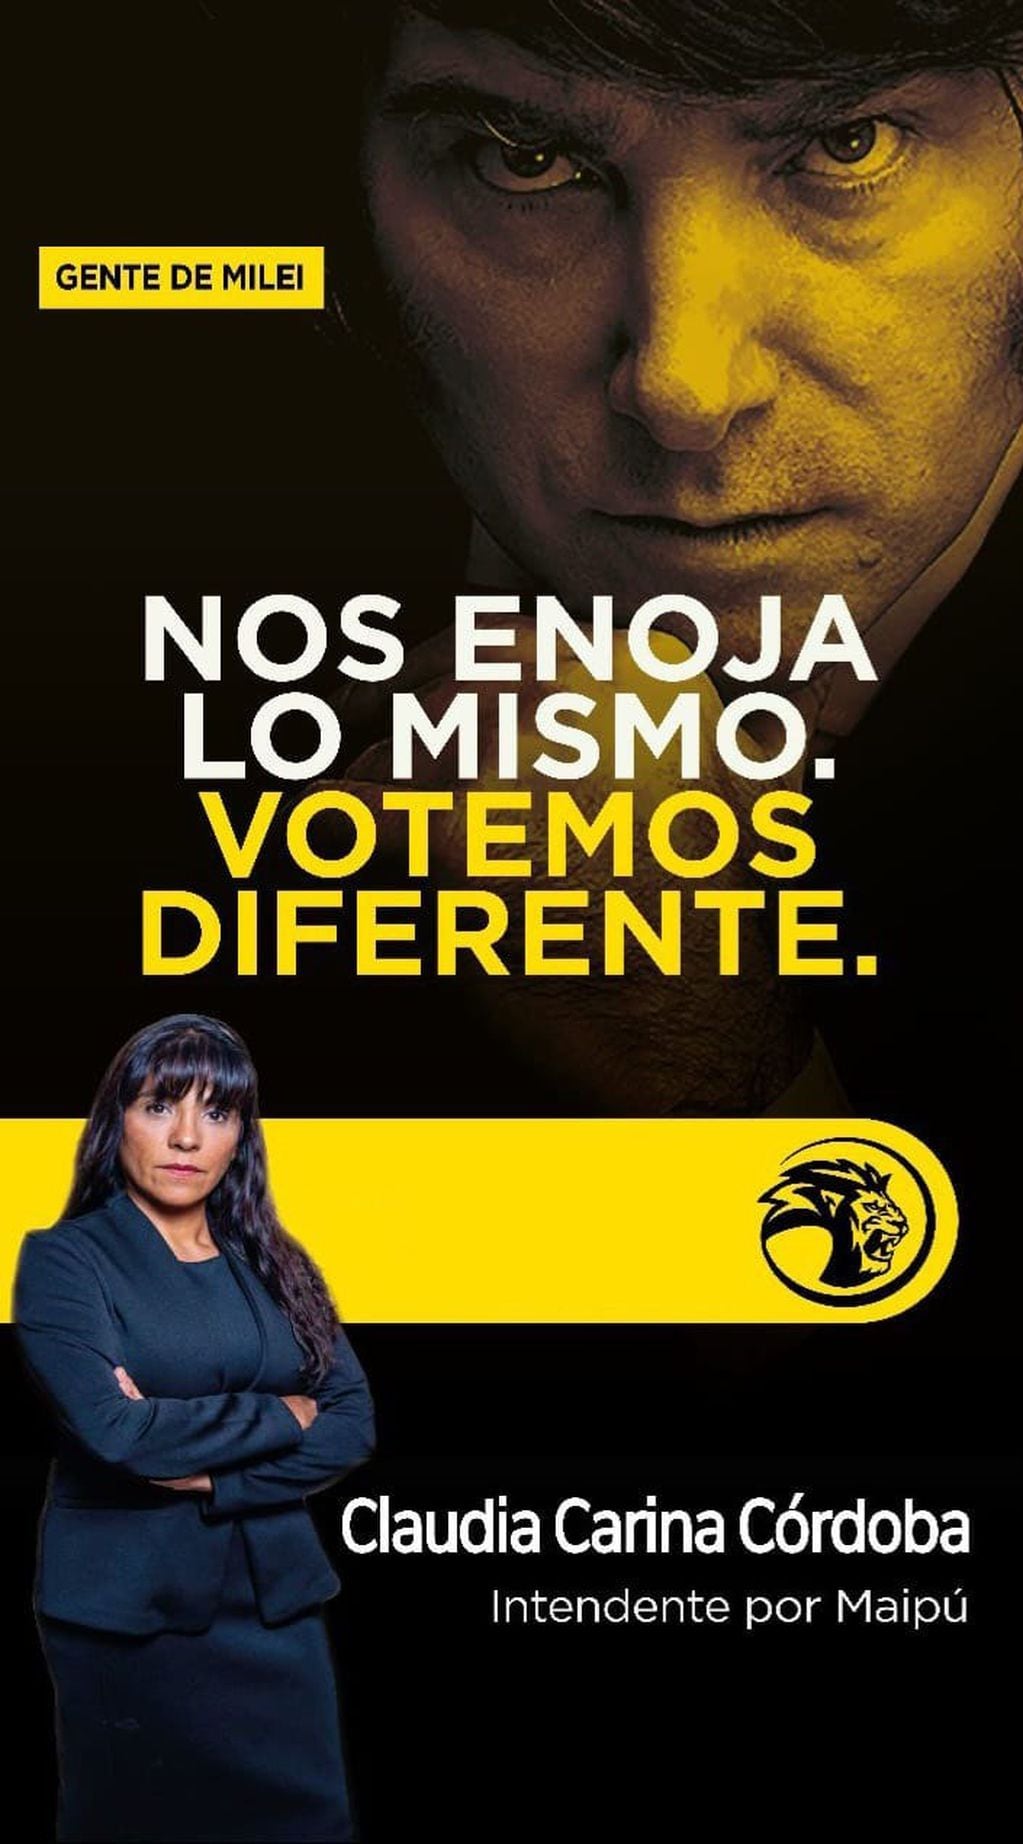 Flyer de campaña de Claudia Córdoba, que la reivindica como la candidata de Javier Milei en Mendoza.